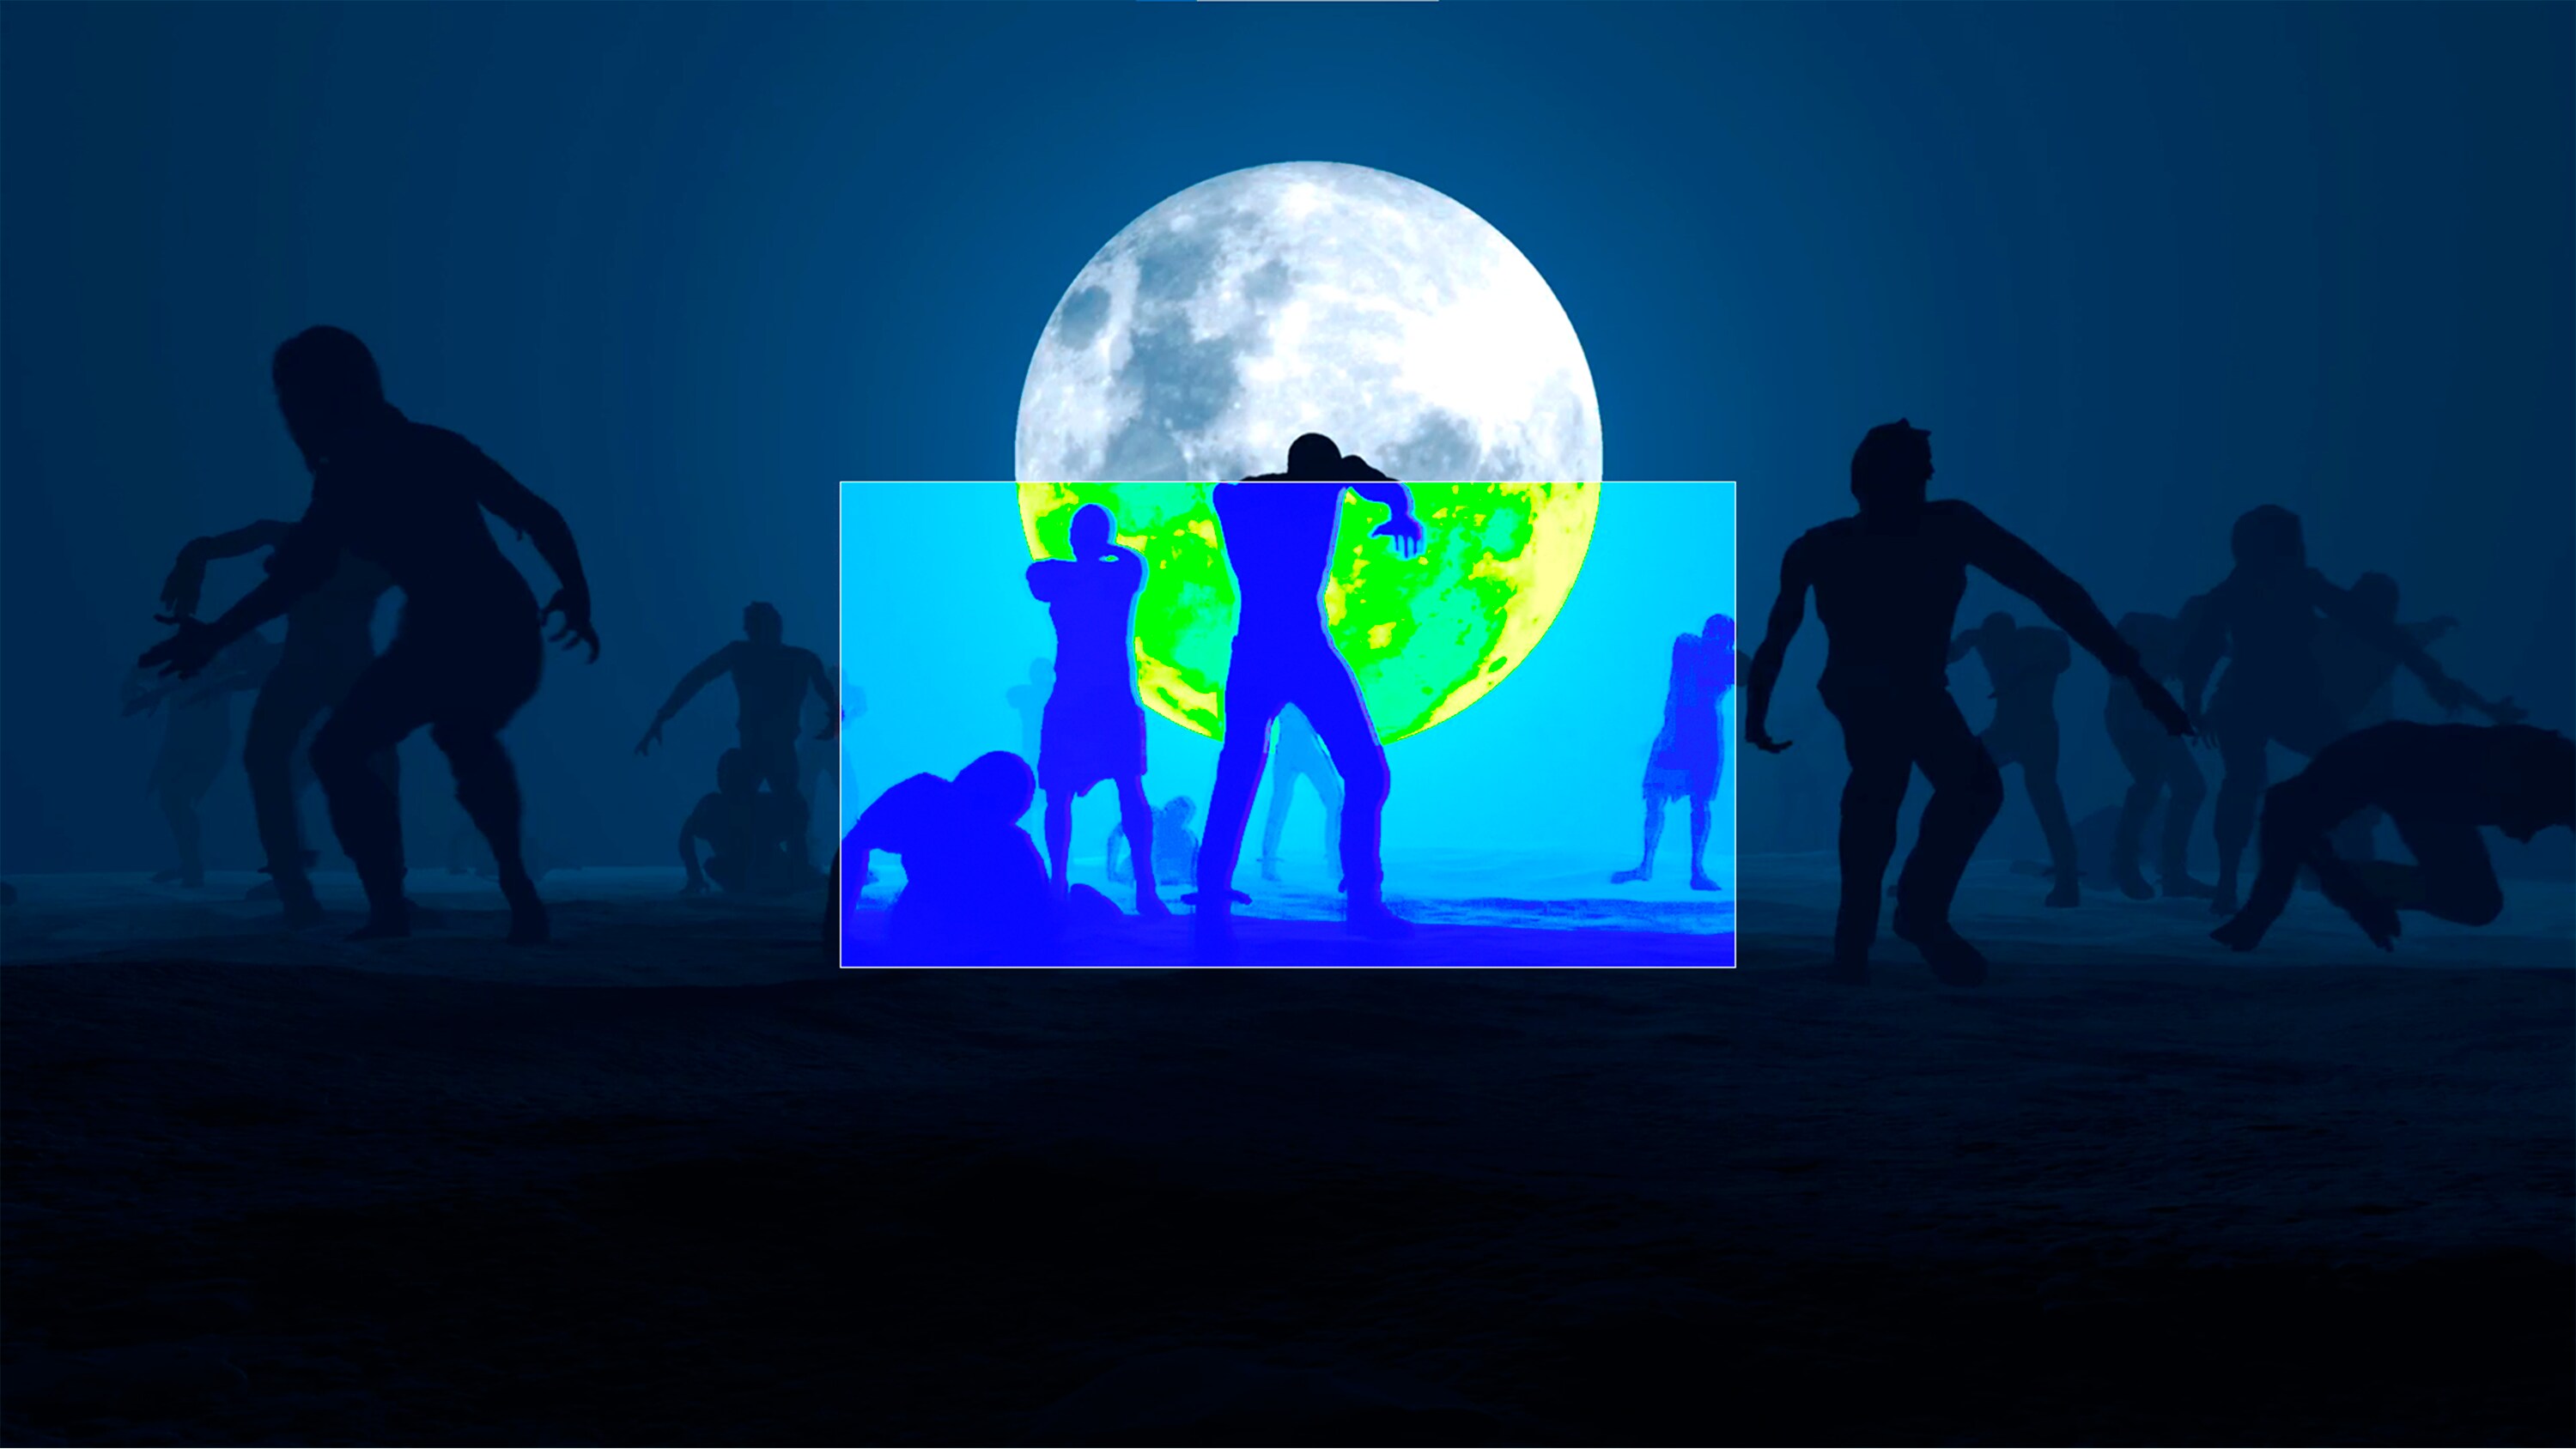 Spelbild av zombies framför fullmåne.